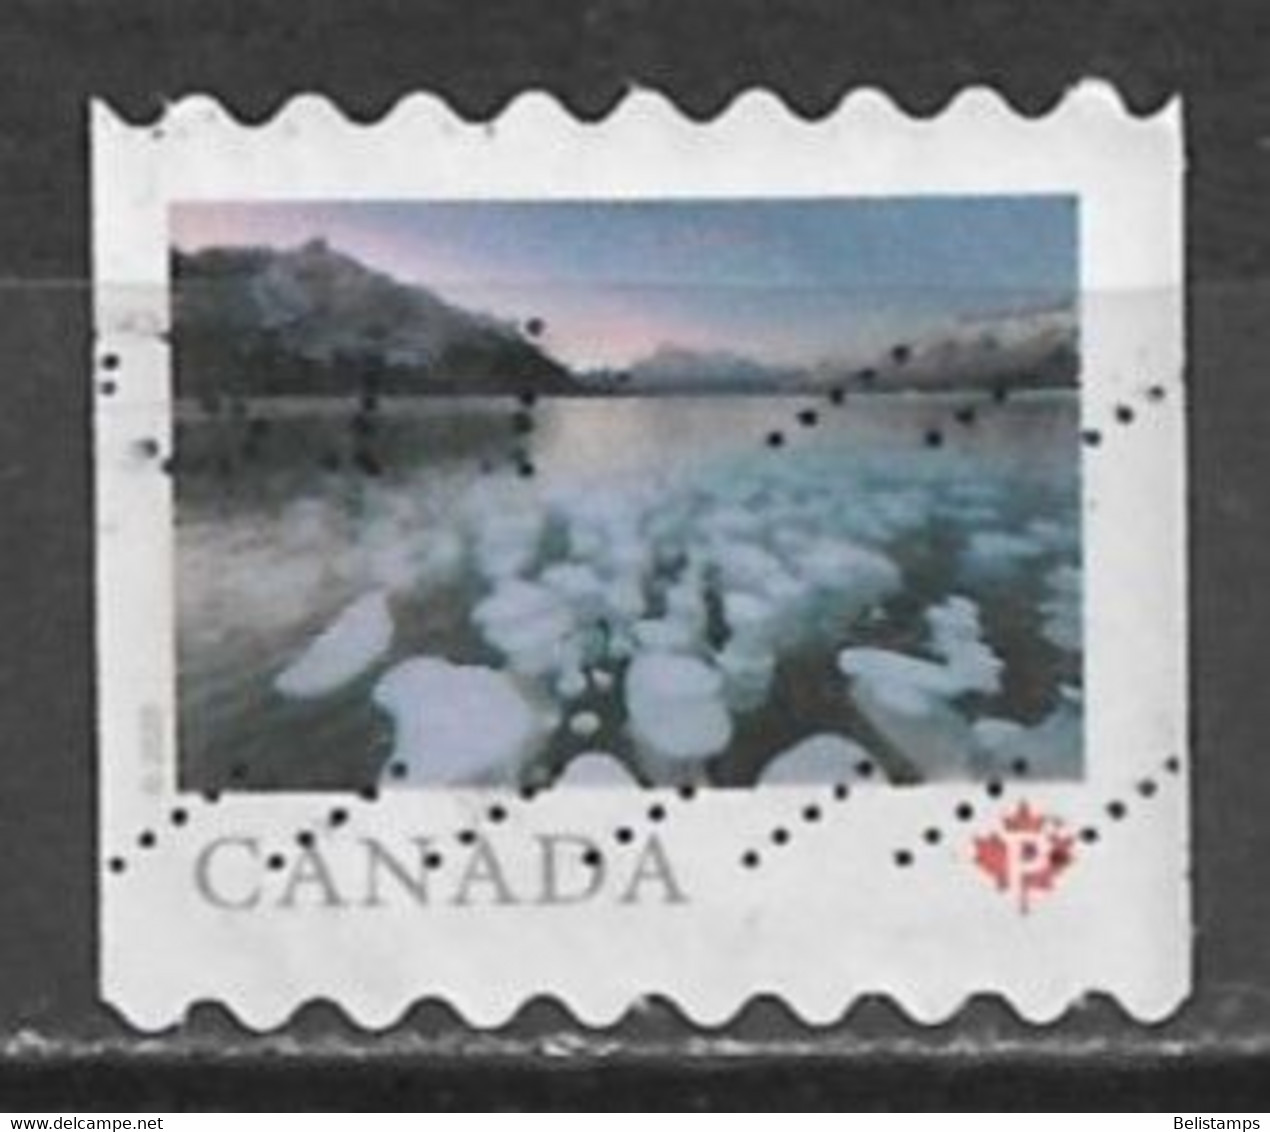 Canada 2020. Scott #3212 (U) Abraham Lake, Alberta - Markenrollen